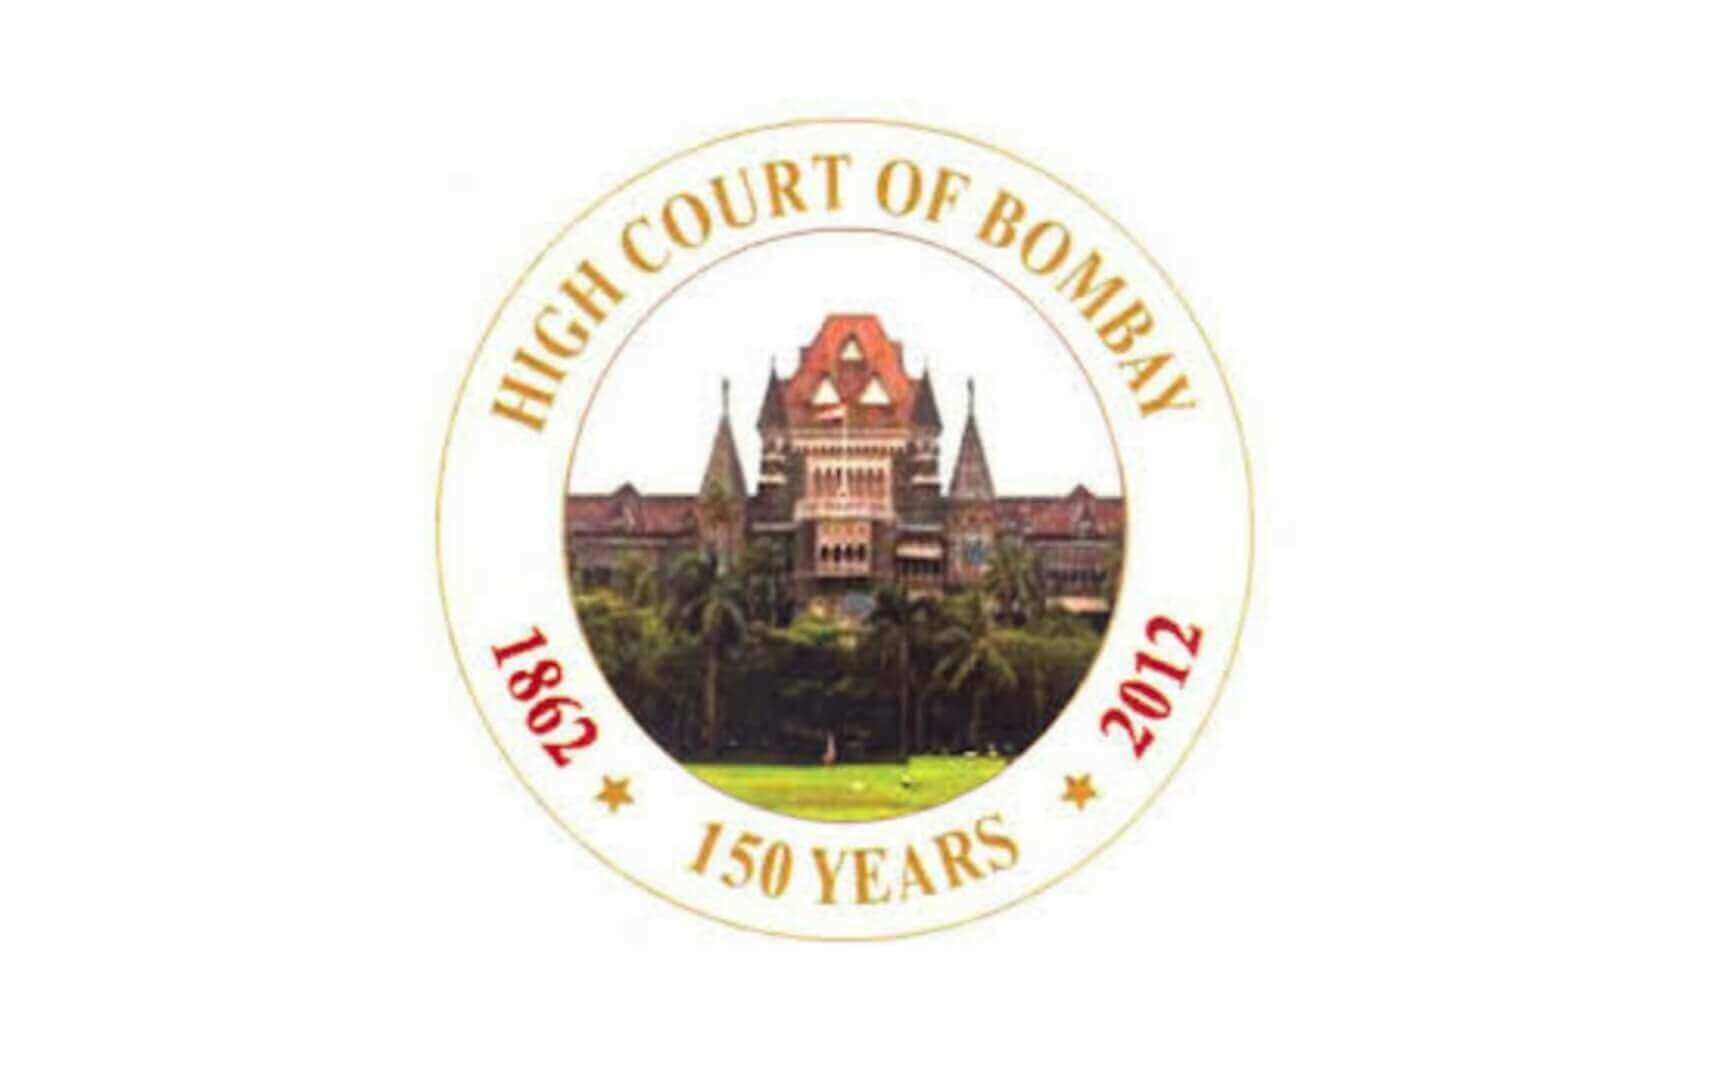 Bombay High Court Recruitment 2022 in marathi मुंबई उच्च न्यायालयात लिपिक पदाच्या 247 जागांसाठी भरती